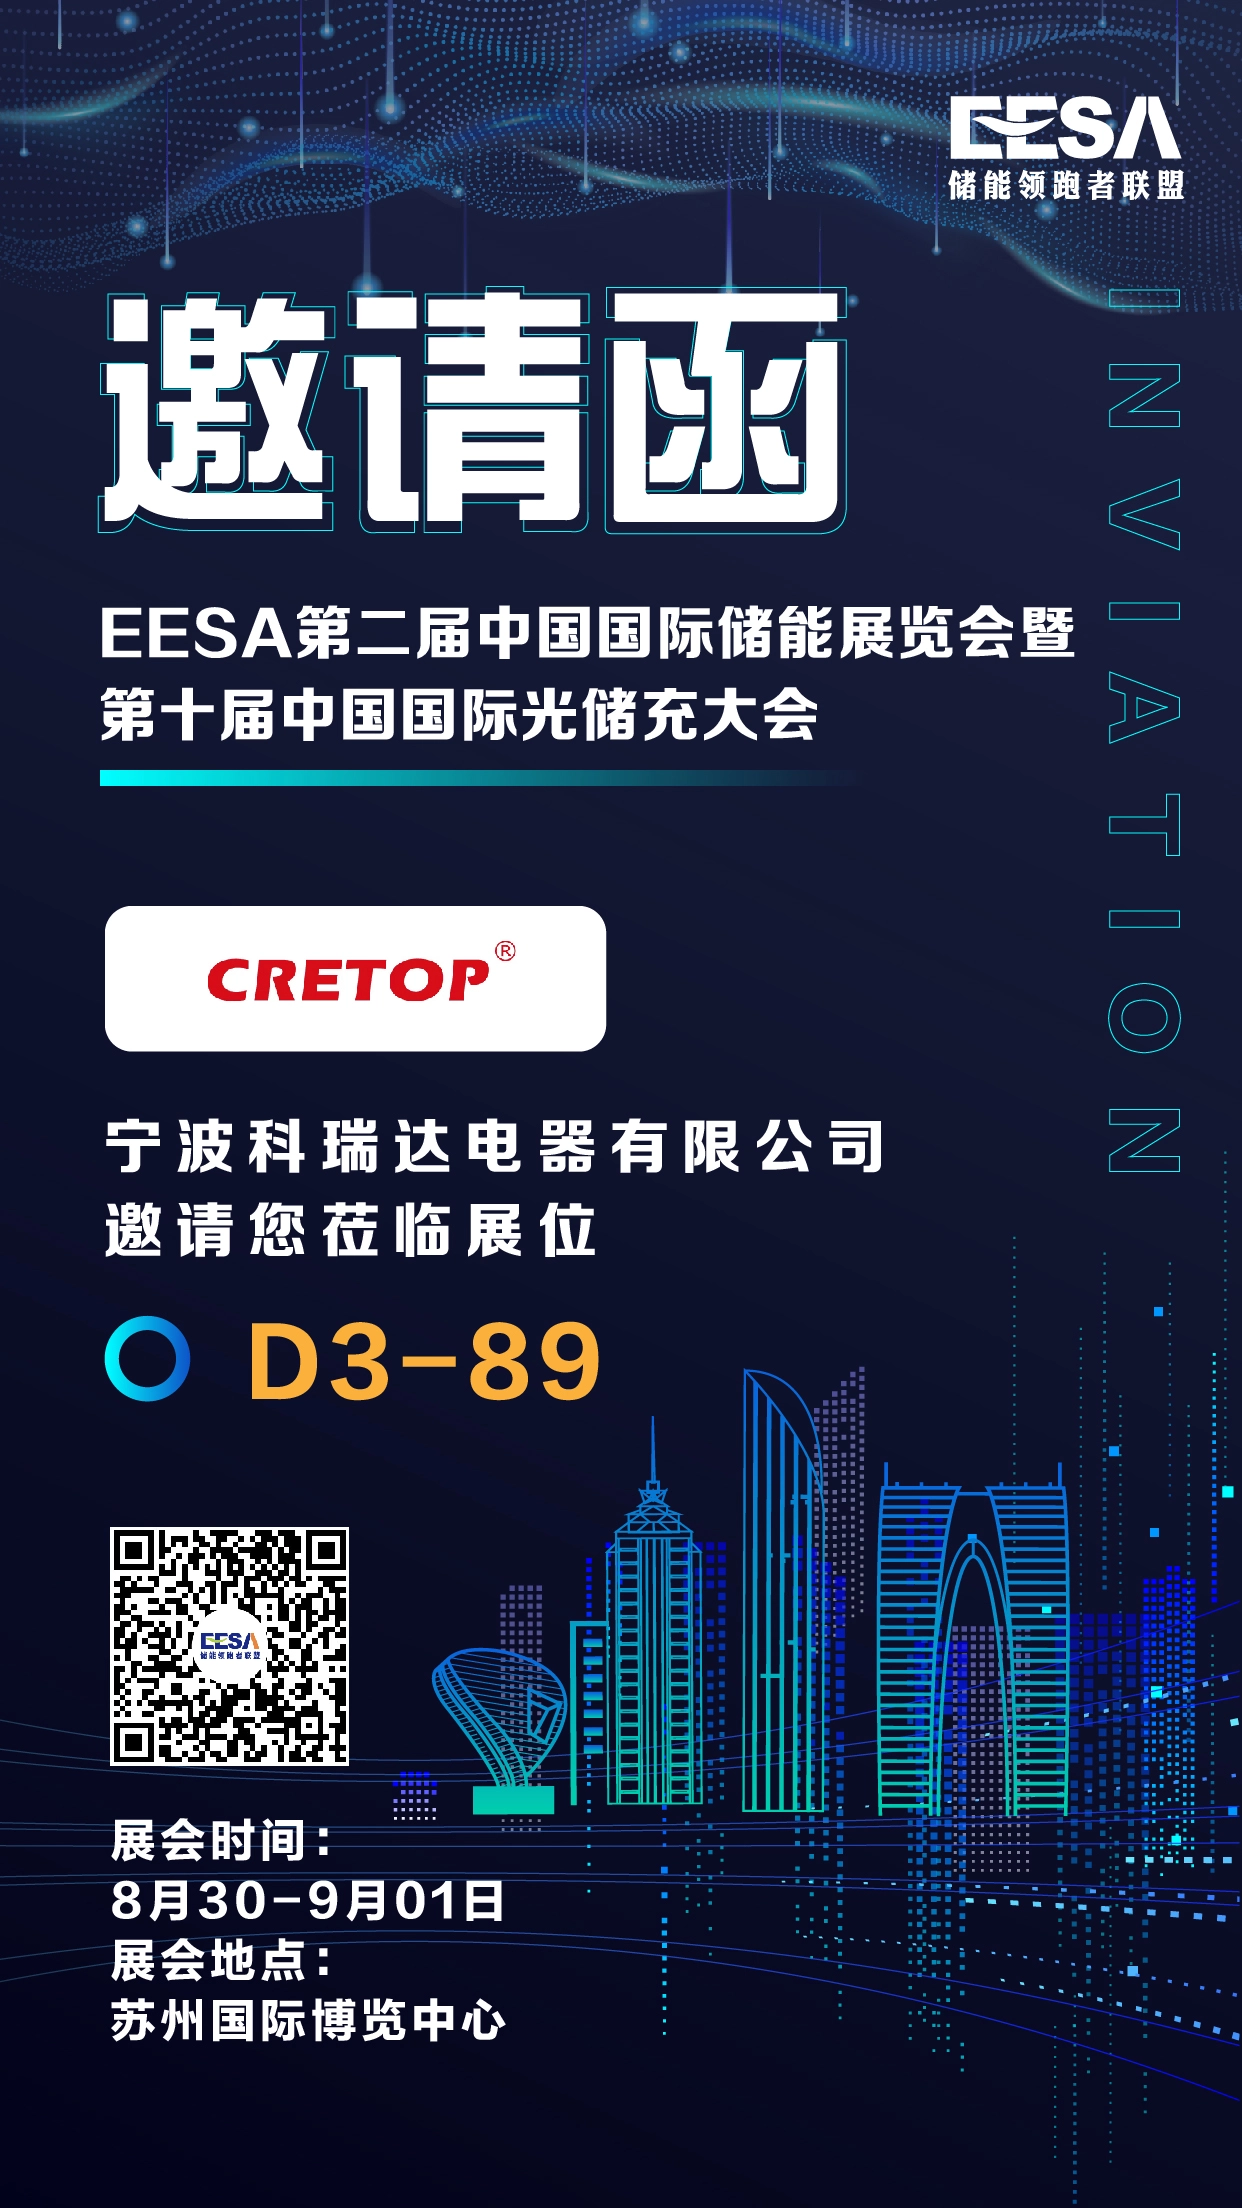 Einladung der Suzhou EESA